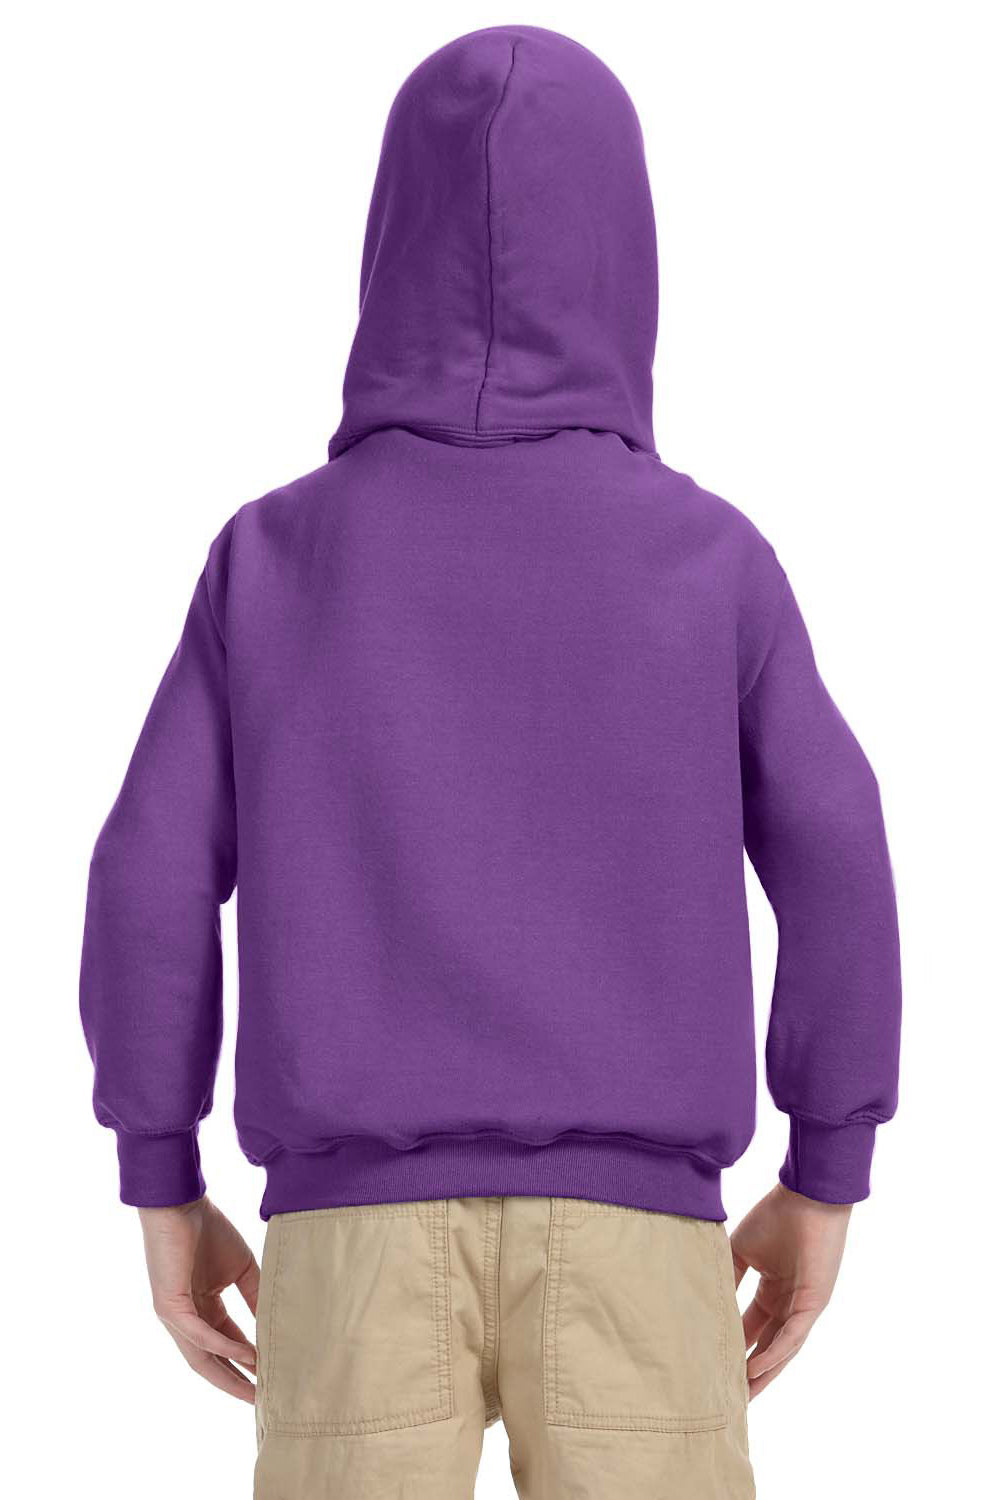 Gildan G185B Youth Hooded Sweatshirt Hoodie Purple Back